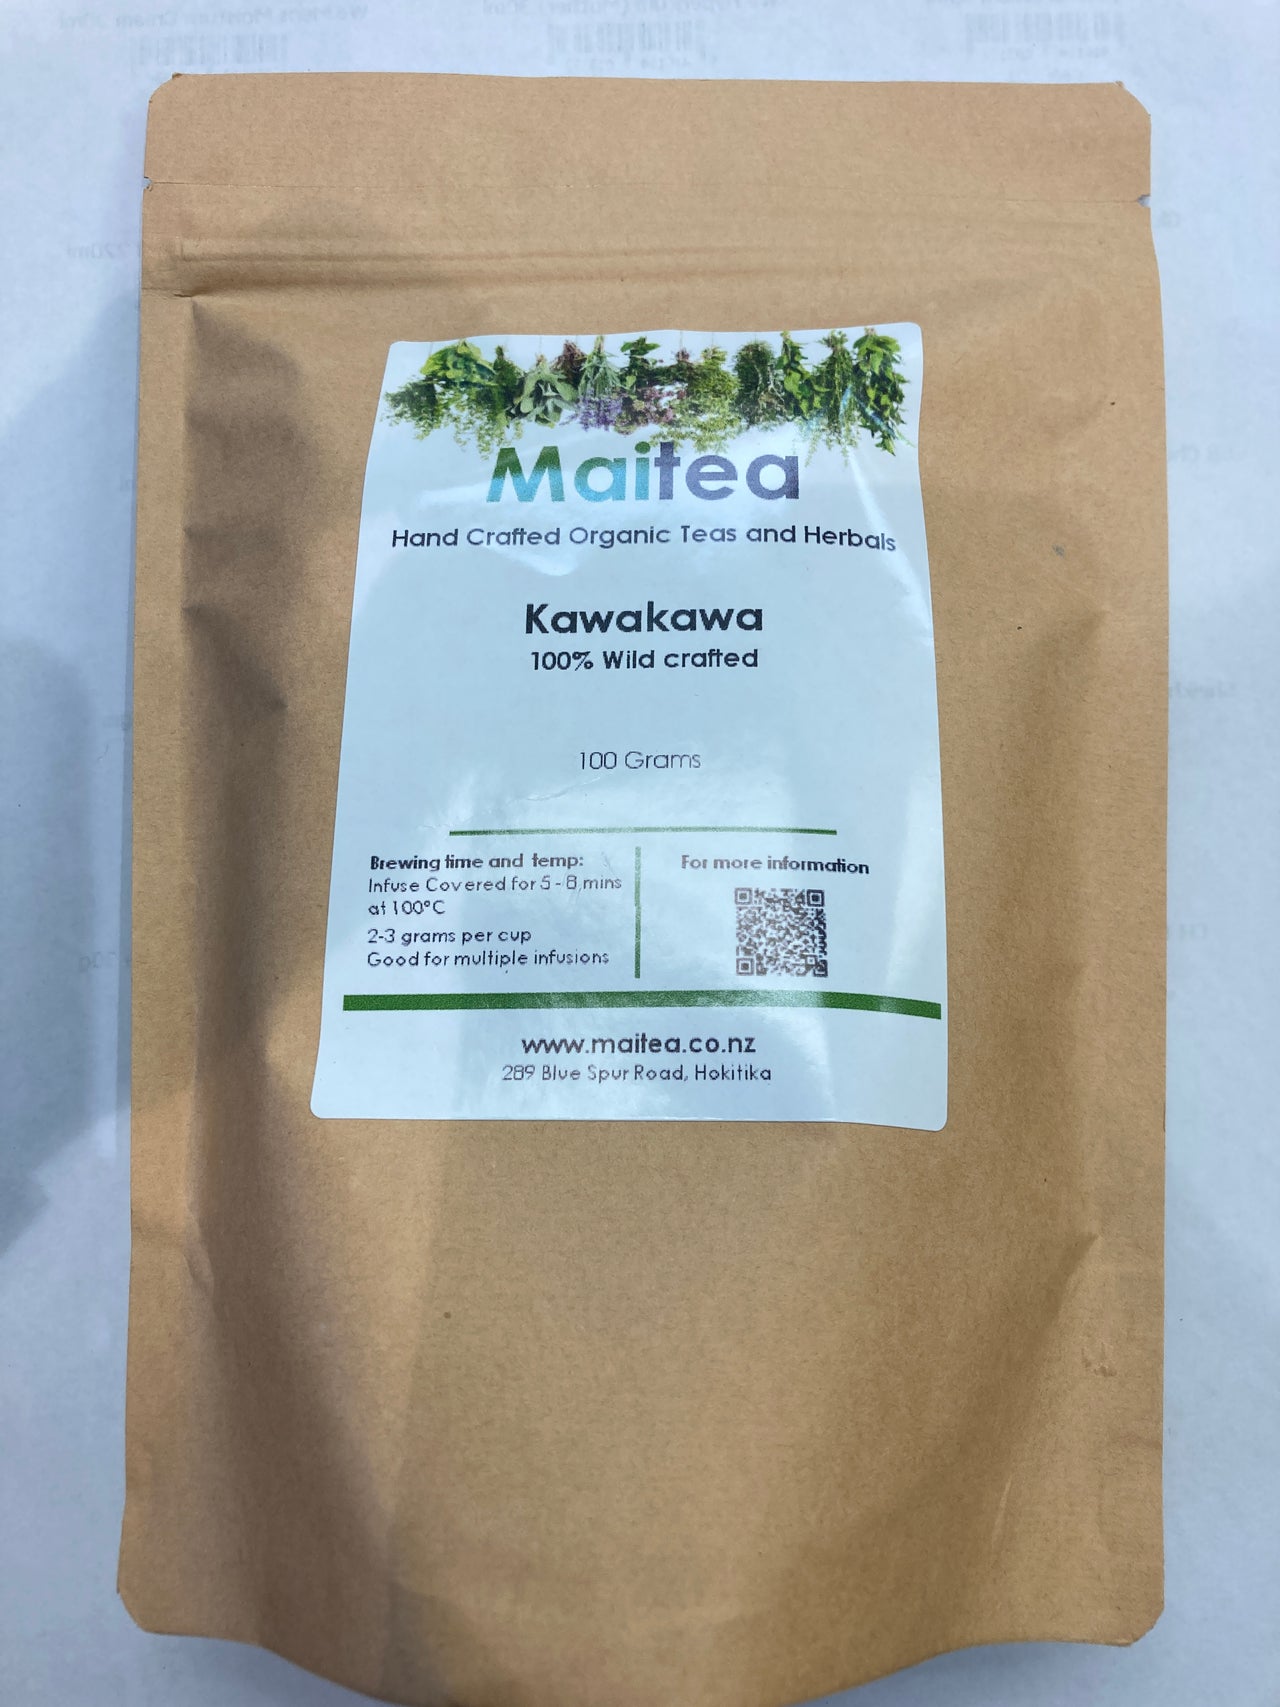 Maitea - Kawakawa Loose Leaf Tea - [100g]